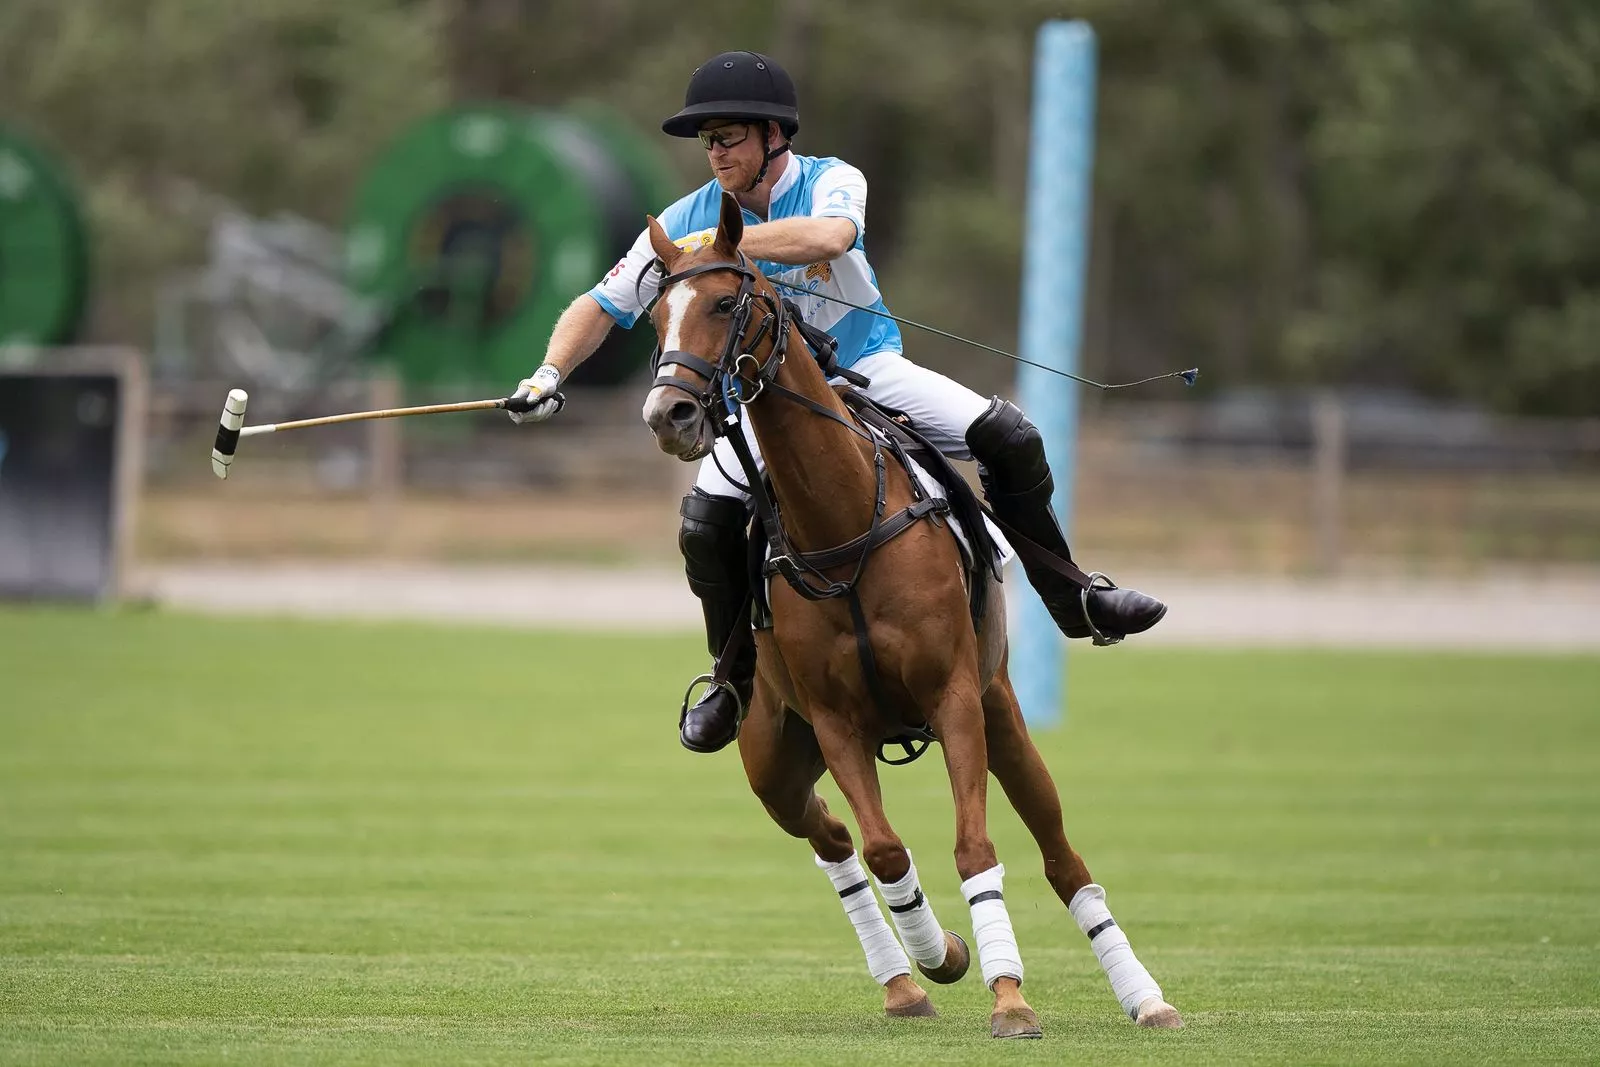 Принц Гарри, герцог Сассекский, играет в поло во время турнира Sentebale ISPS Handa Polo Cup 2022 в Аспене, 25 августа 2022 г., фото 2